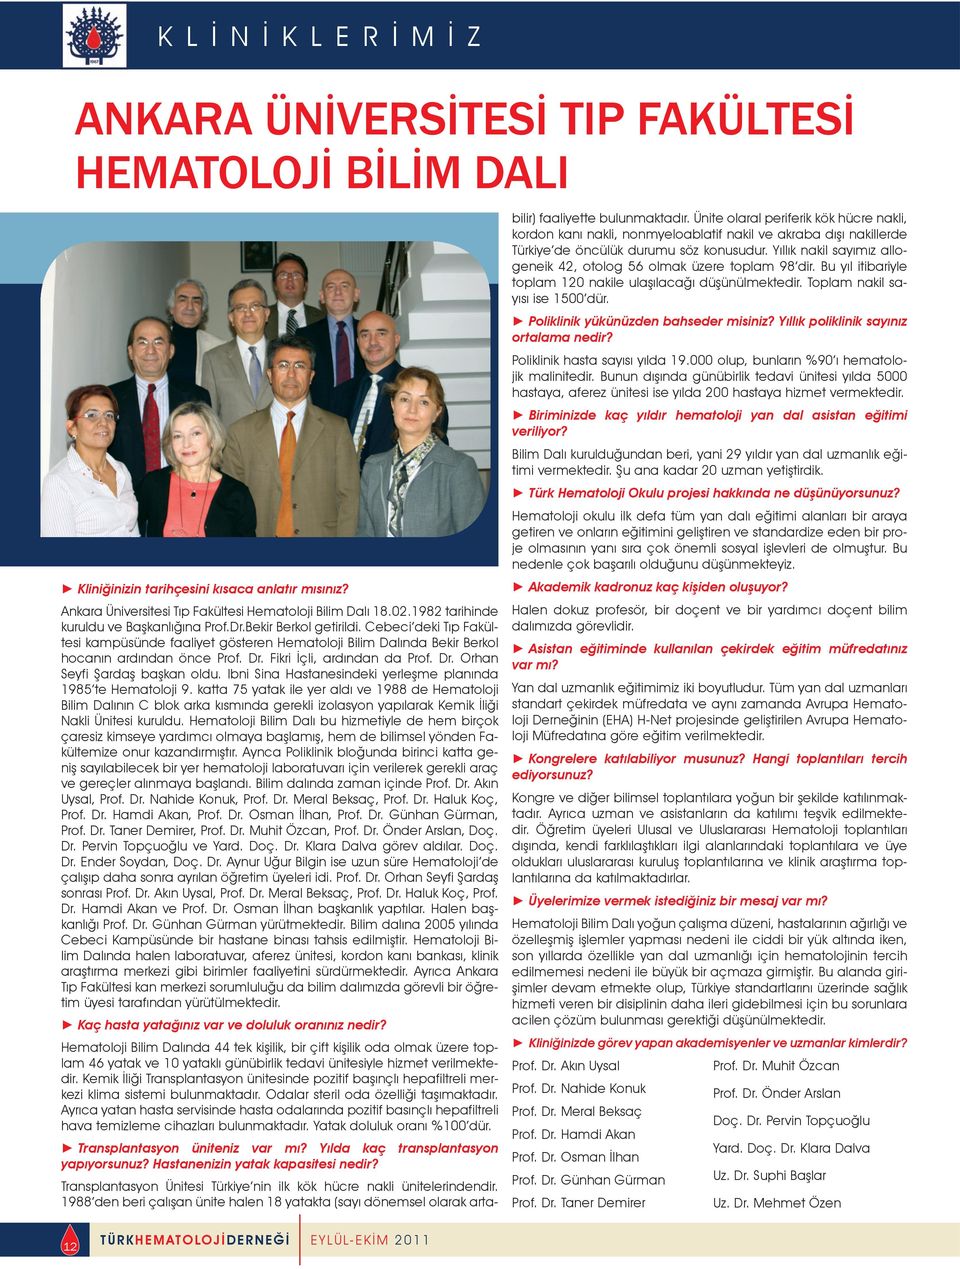 Fikri İçli, ardından da Prof. Dr. Orhan Seyfi Şardaş başkan oldu. lbni Sina Hastanesindeki yerleşme planında 1985 te Hematoloji 9.